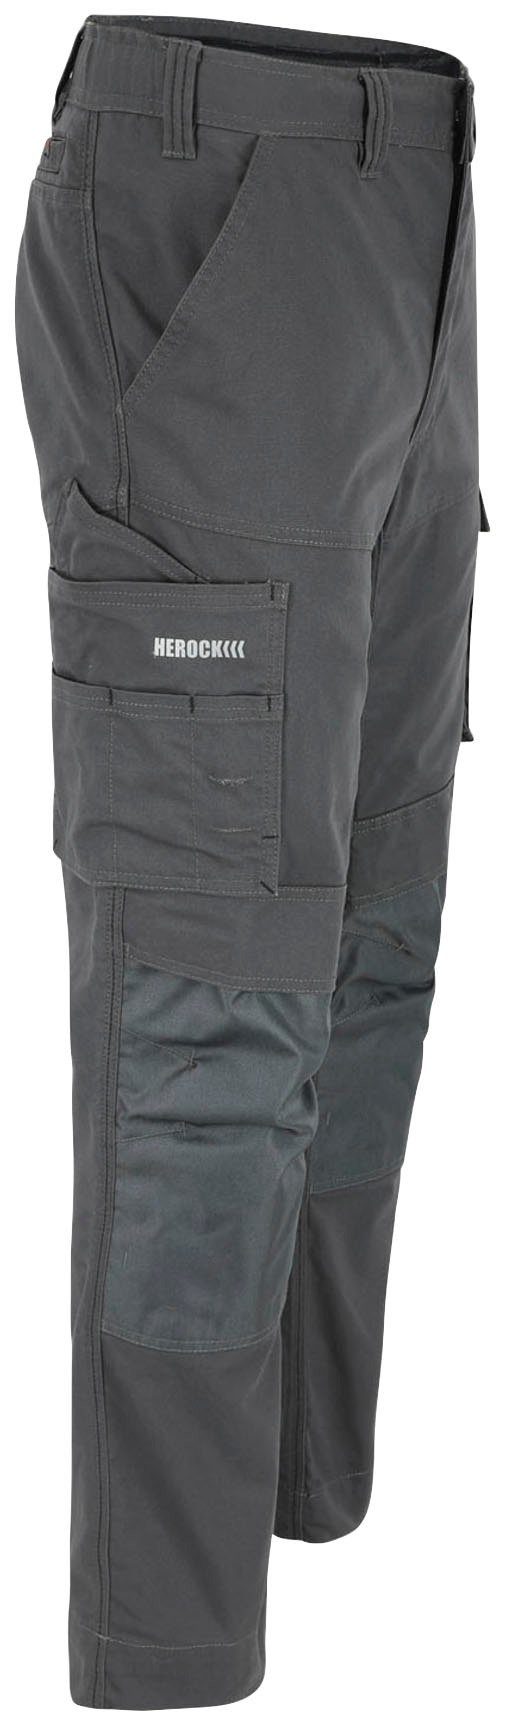 Herock Arbeitshose SOCRES 2-Wege-Stretch, Multi-pocket, beschichtet, grau bequem wasserabweisend